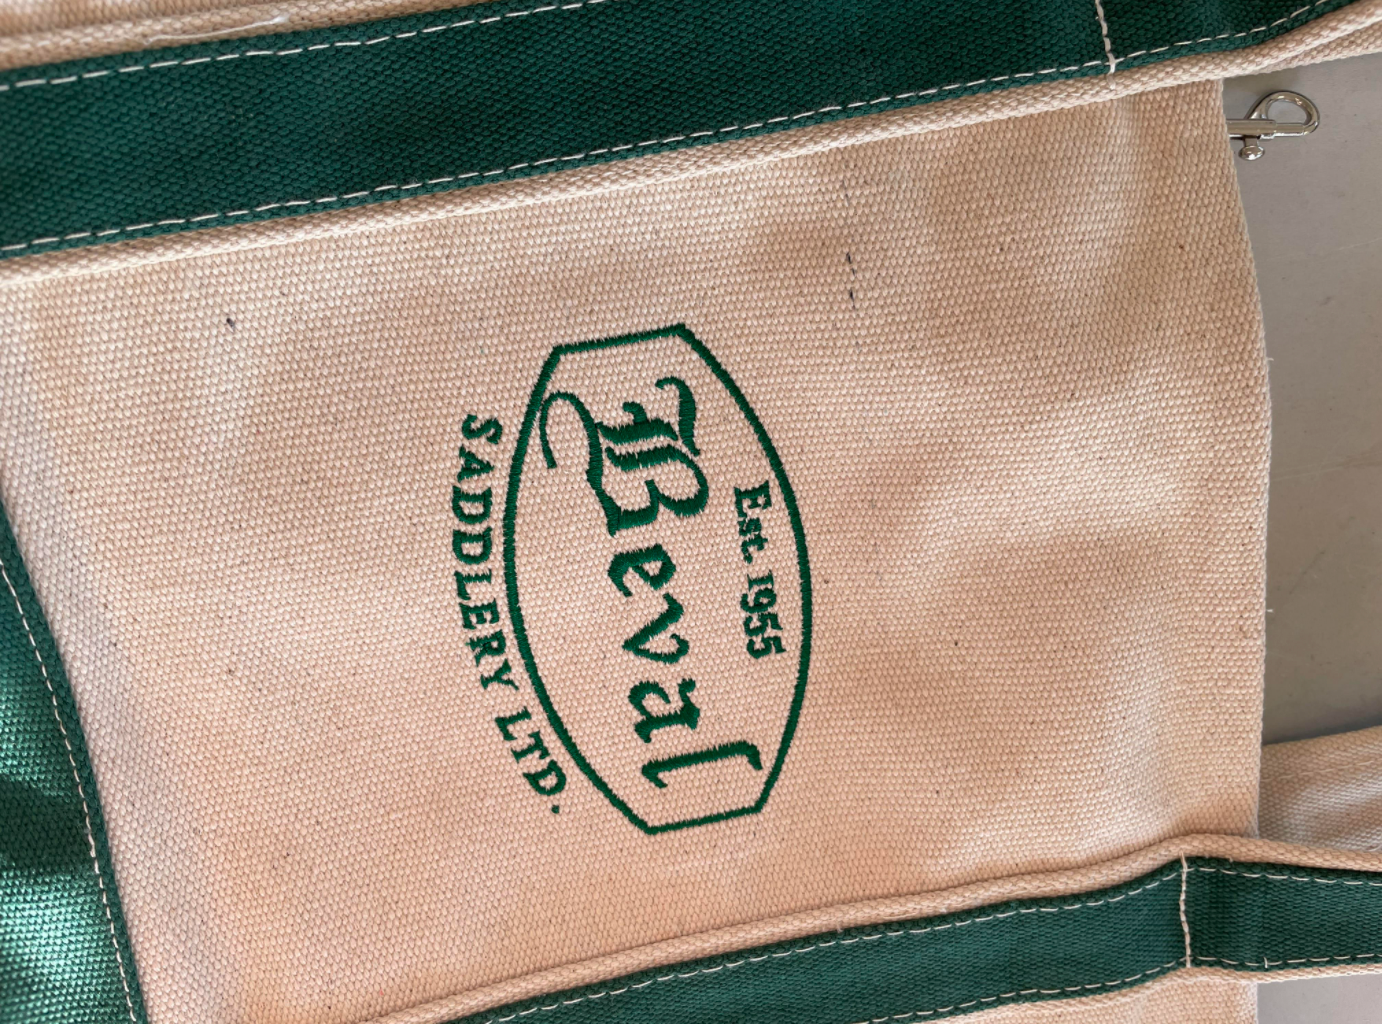 Beval Branded Tote Bags